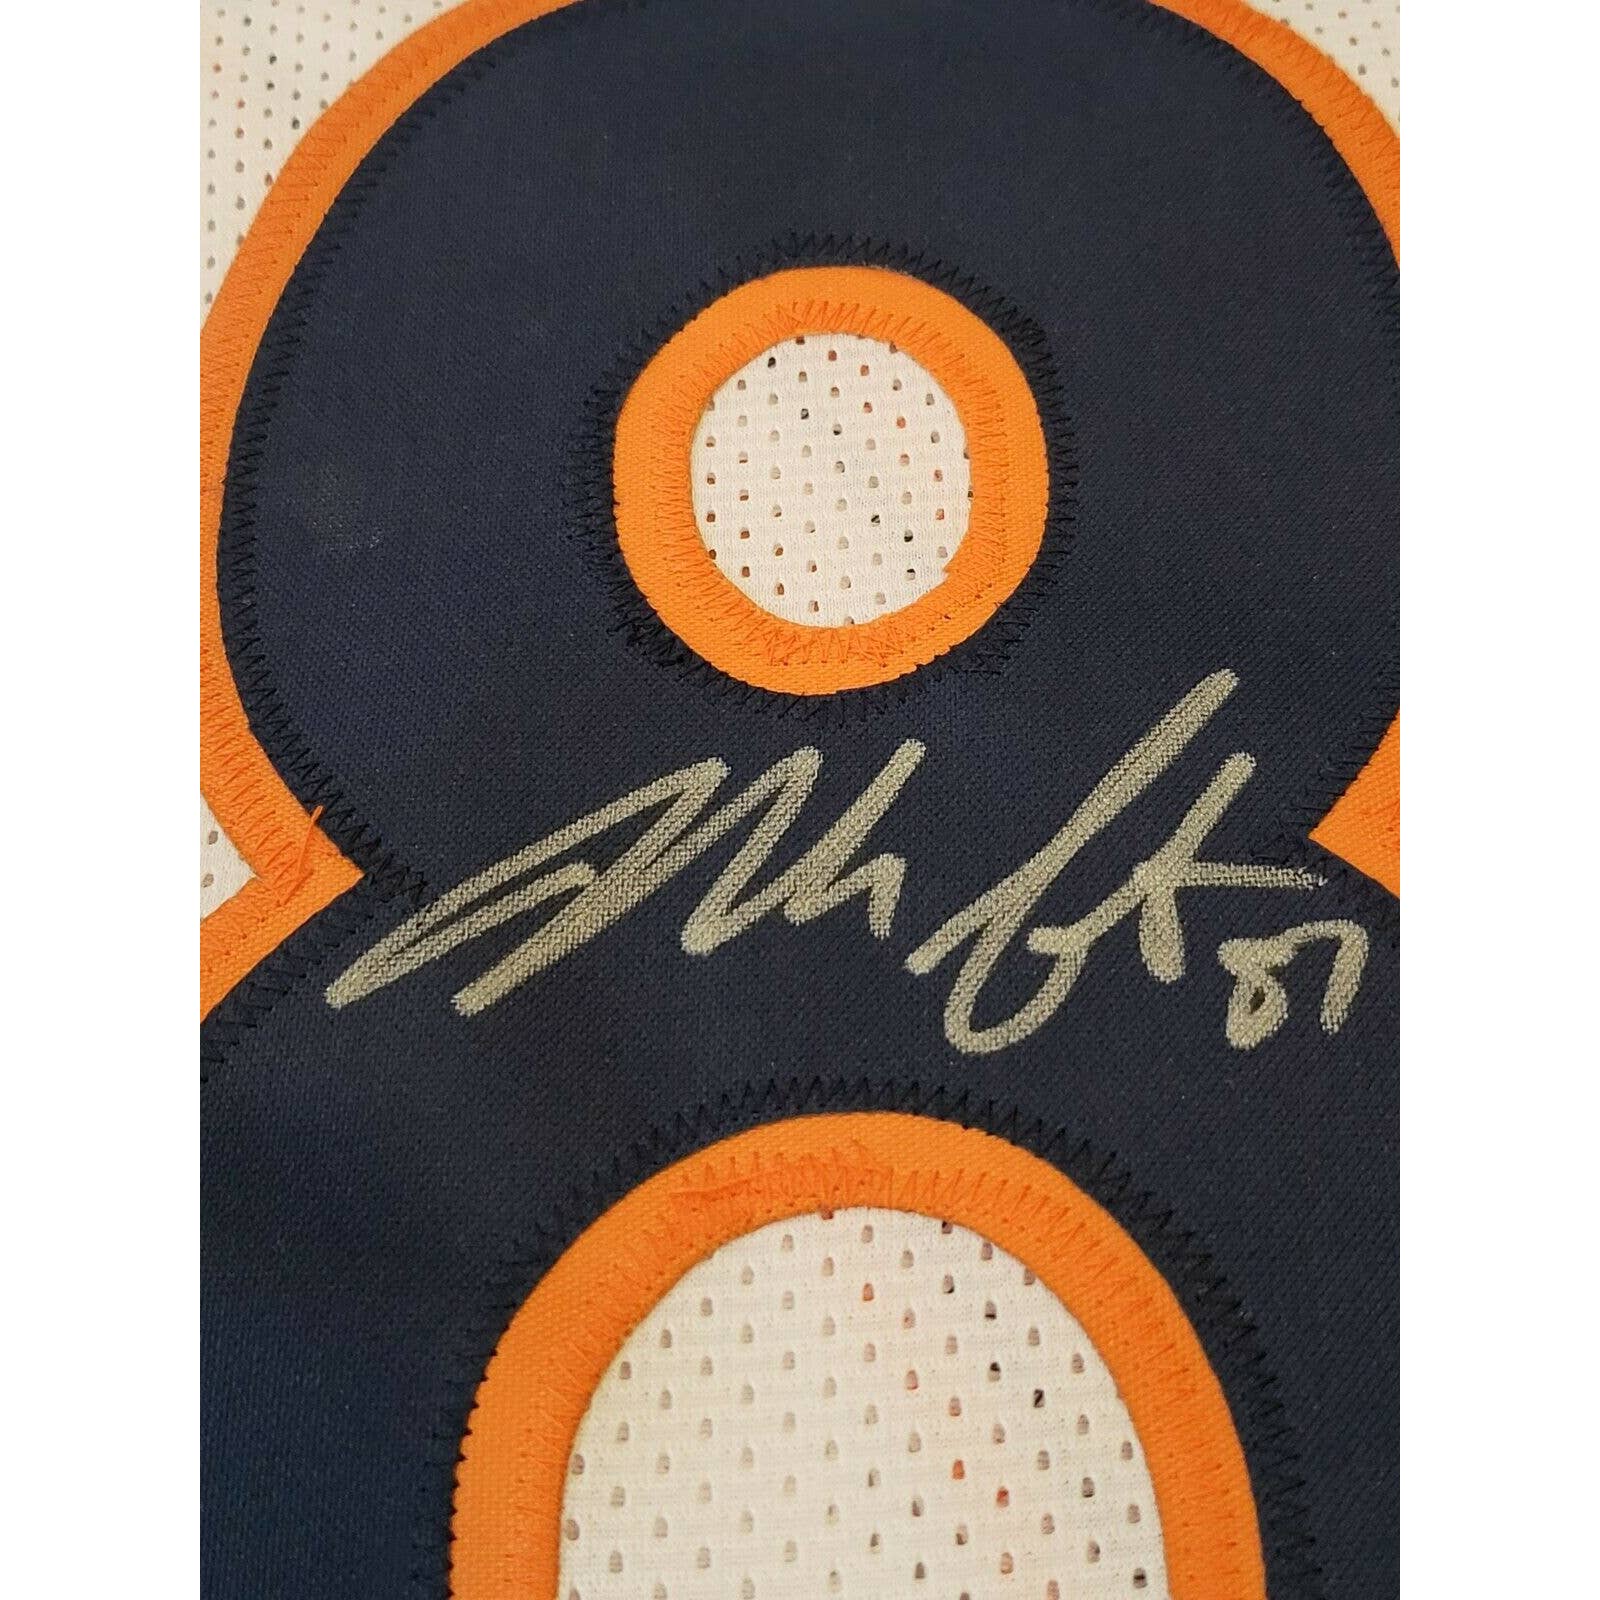 Noah Fant Autographed/Signed Jersey Beckett Sticker Denver Broncos - TreasuresEvolved